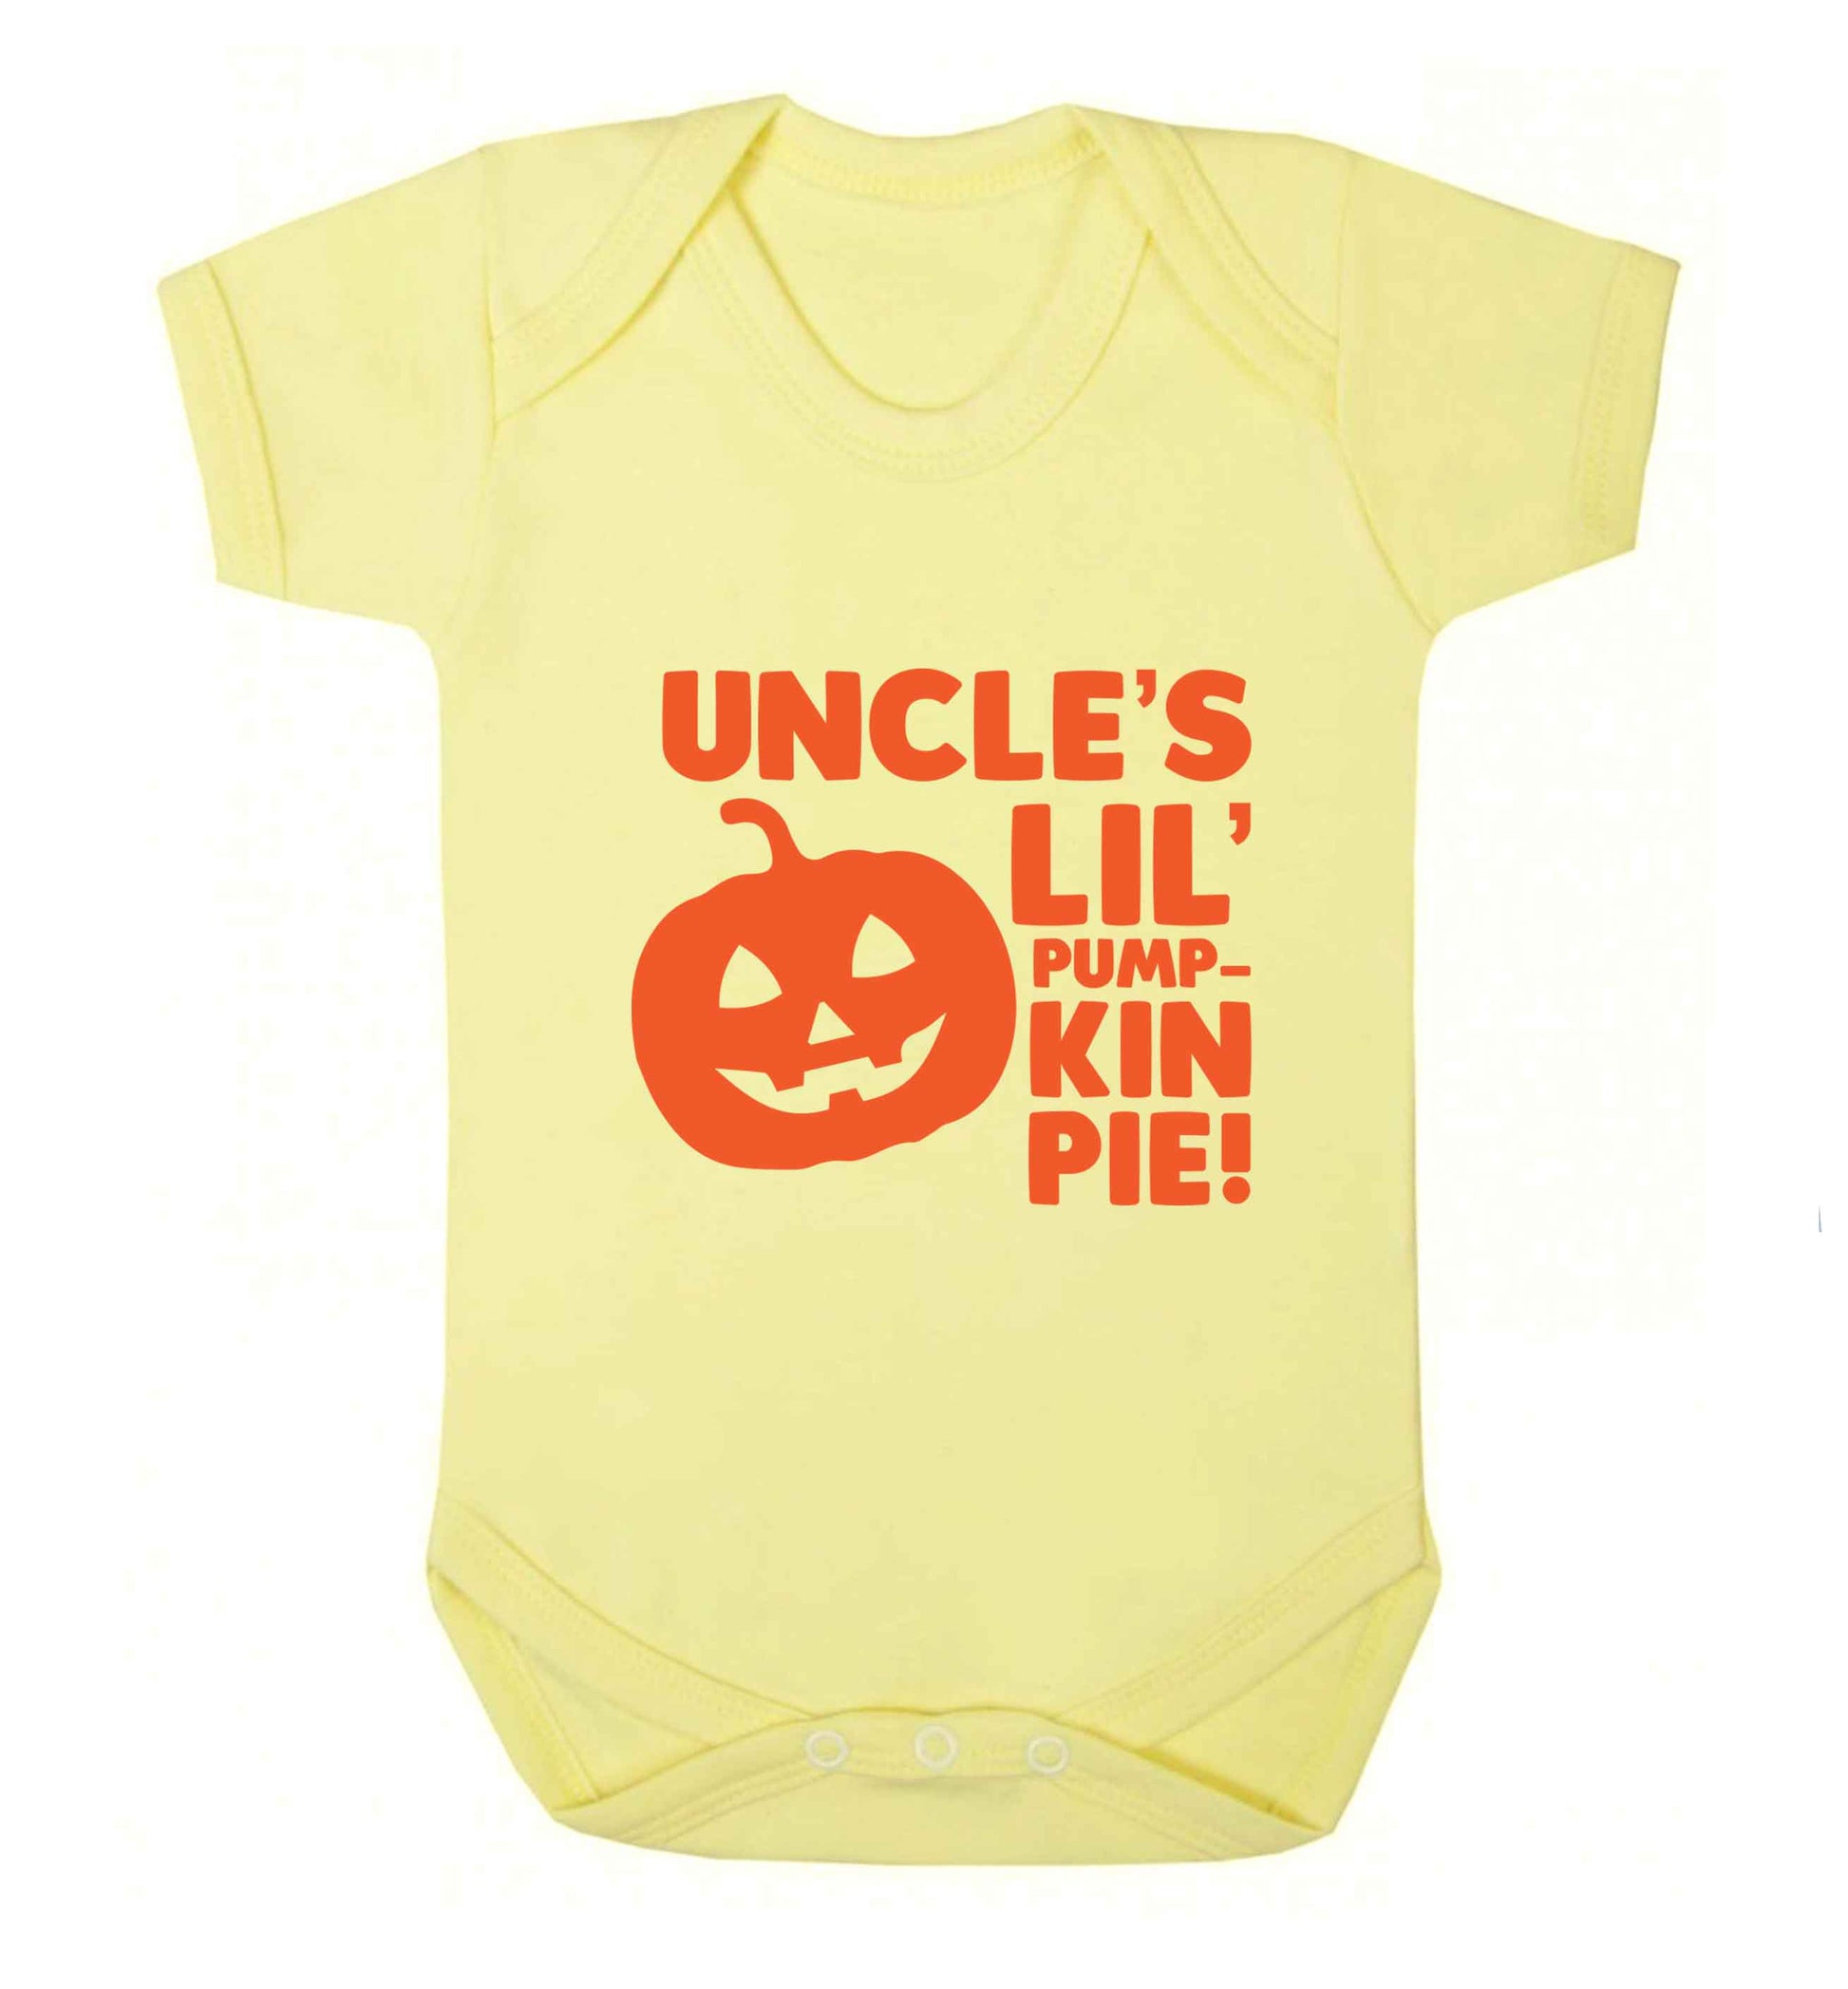 Uncle's lil' pumpkin pie baby vest pale yellow 18-24 months